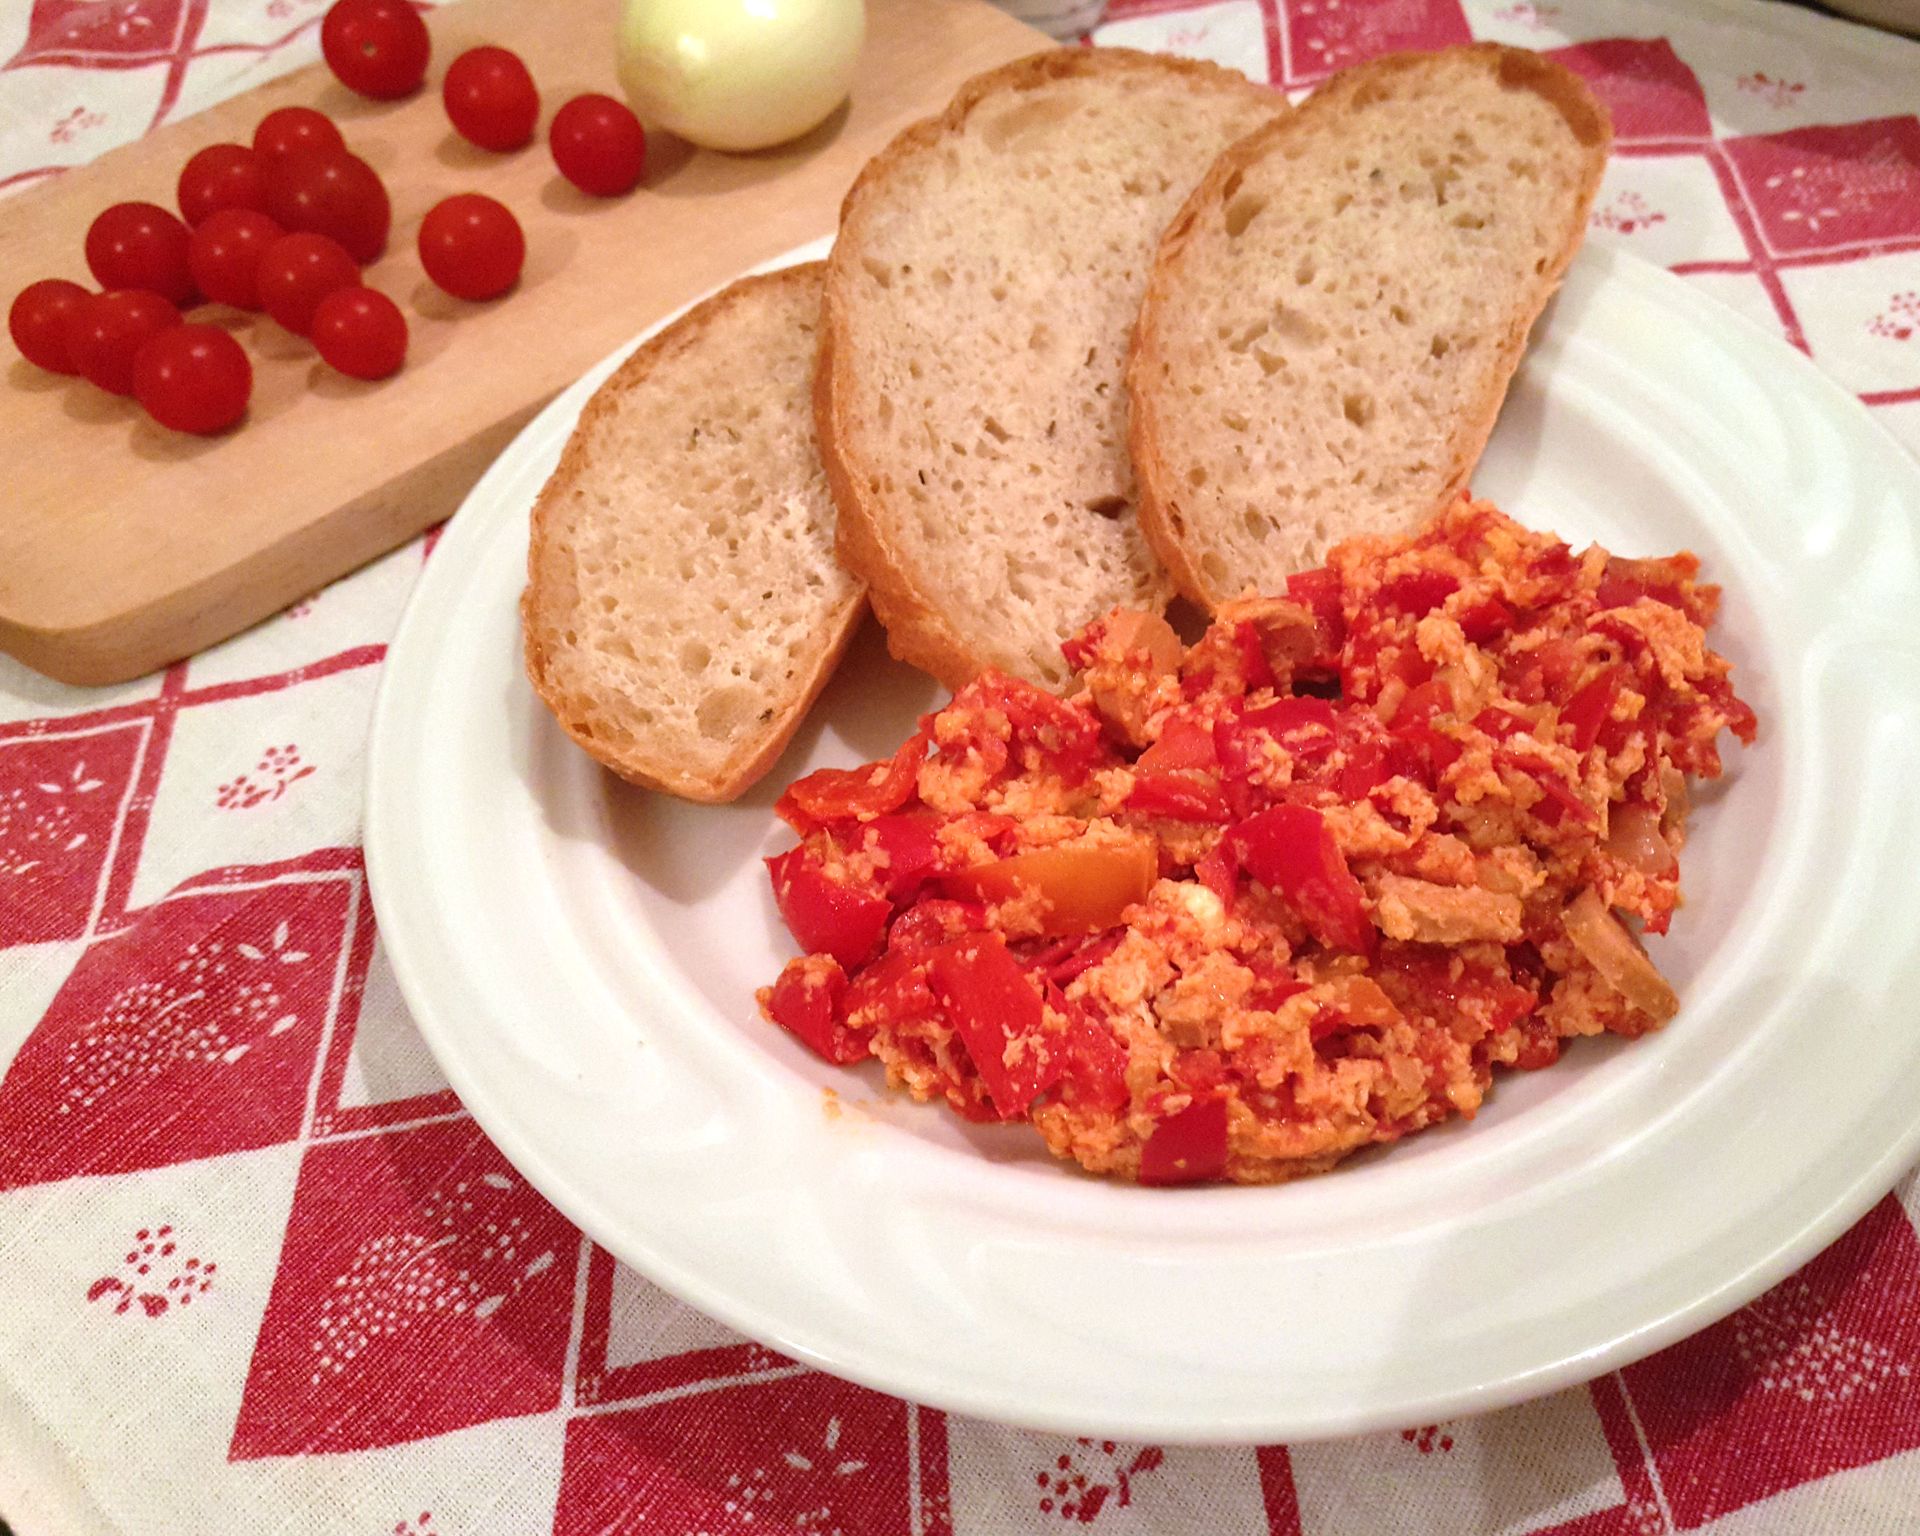 Vajcové lečo s červenou paprikou s krajcami chleba, v pozadí cherry paradajky a cibuľa